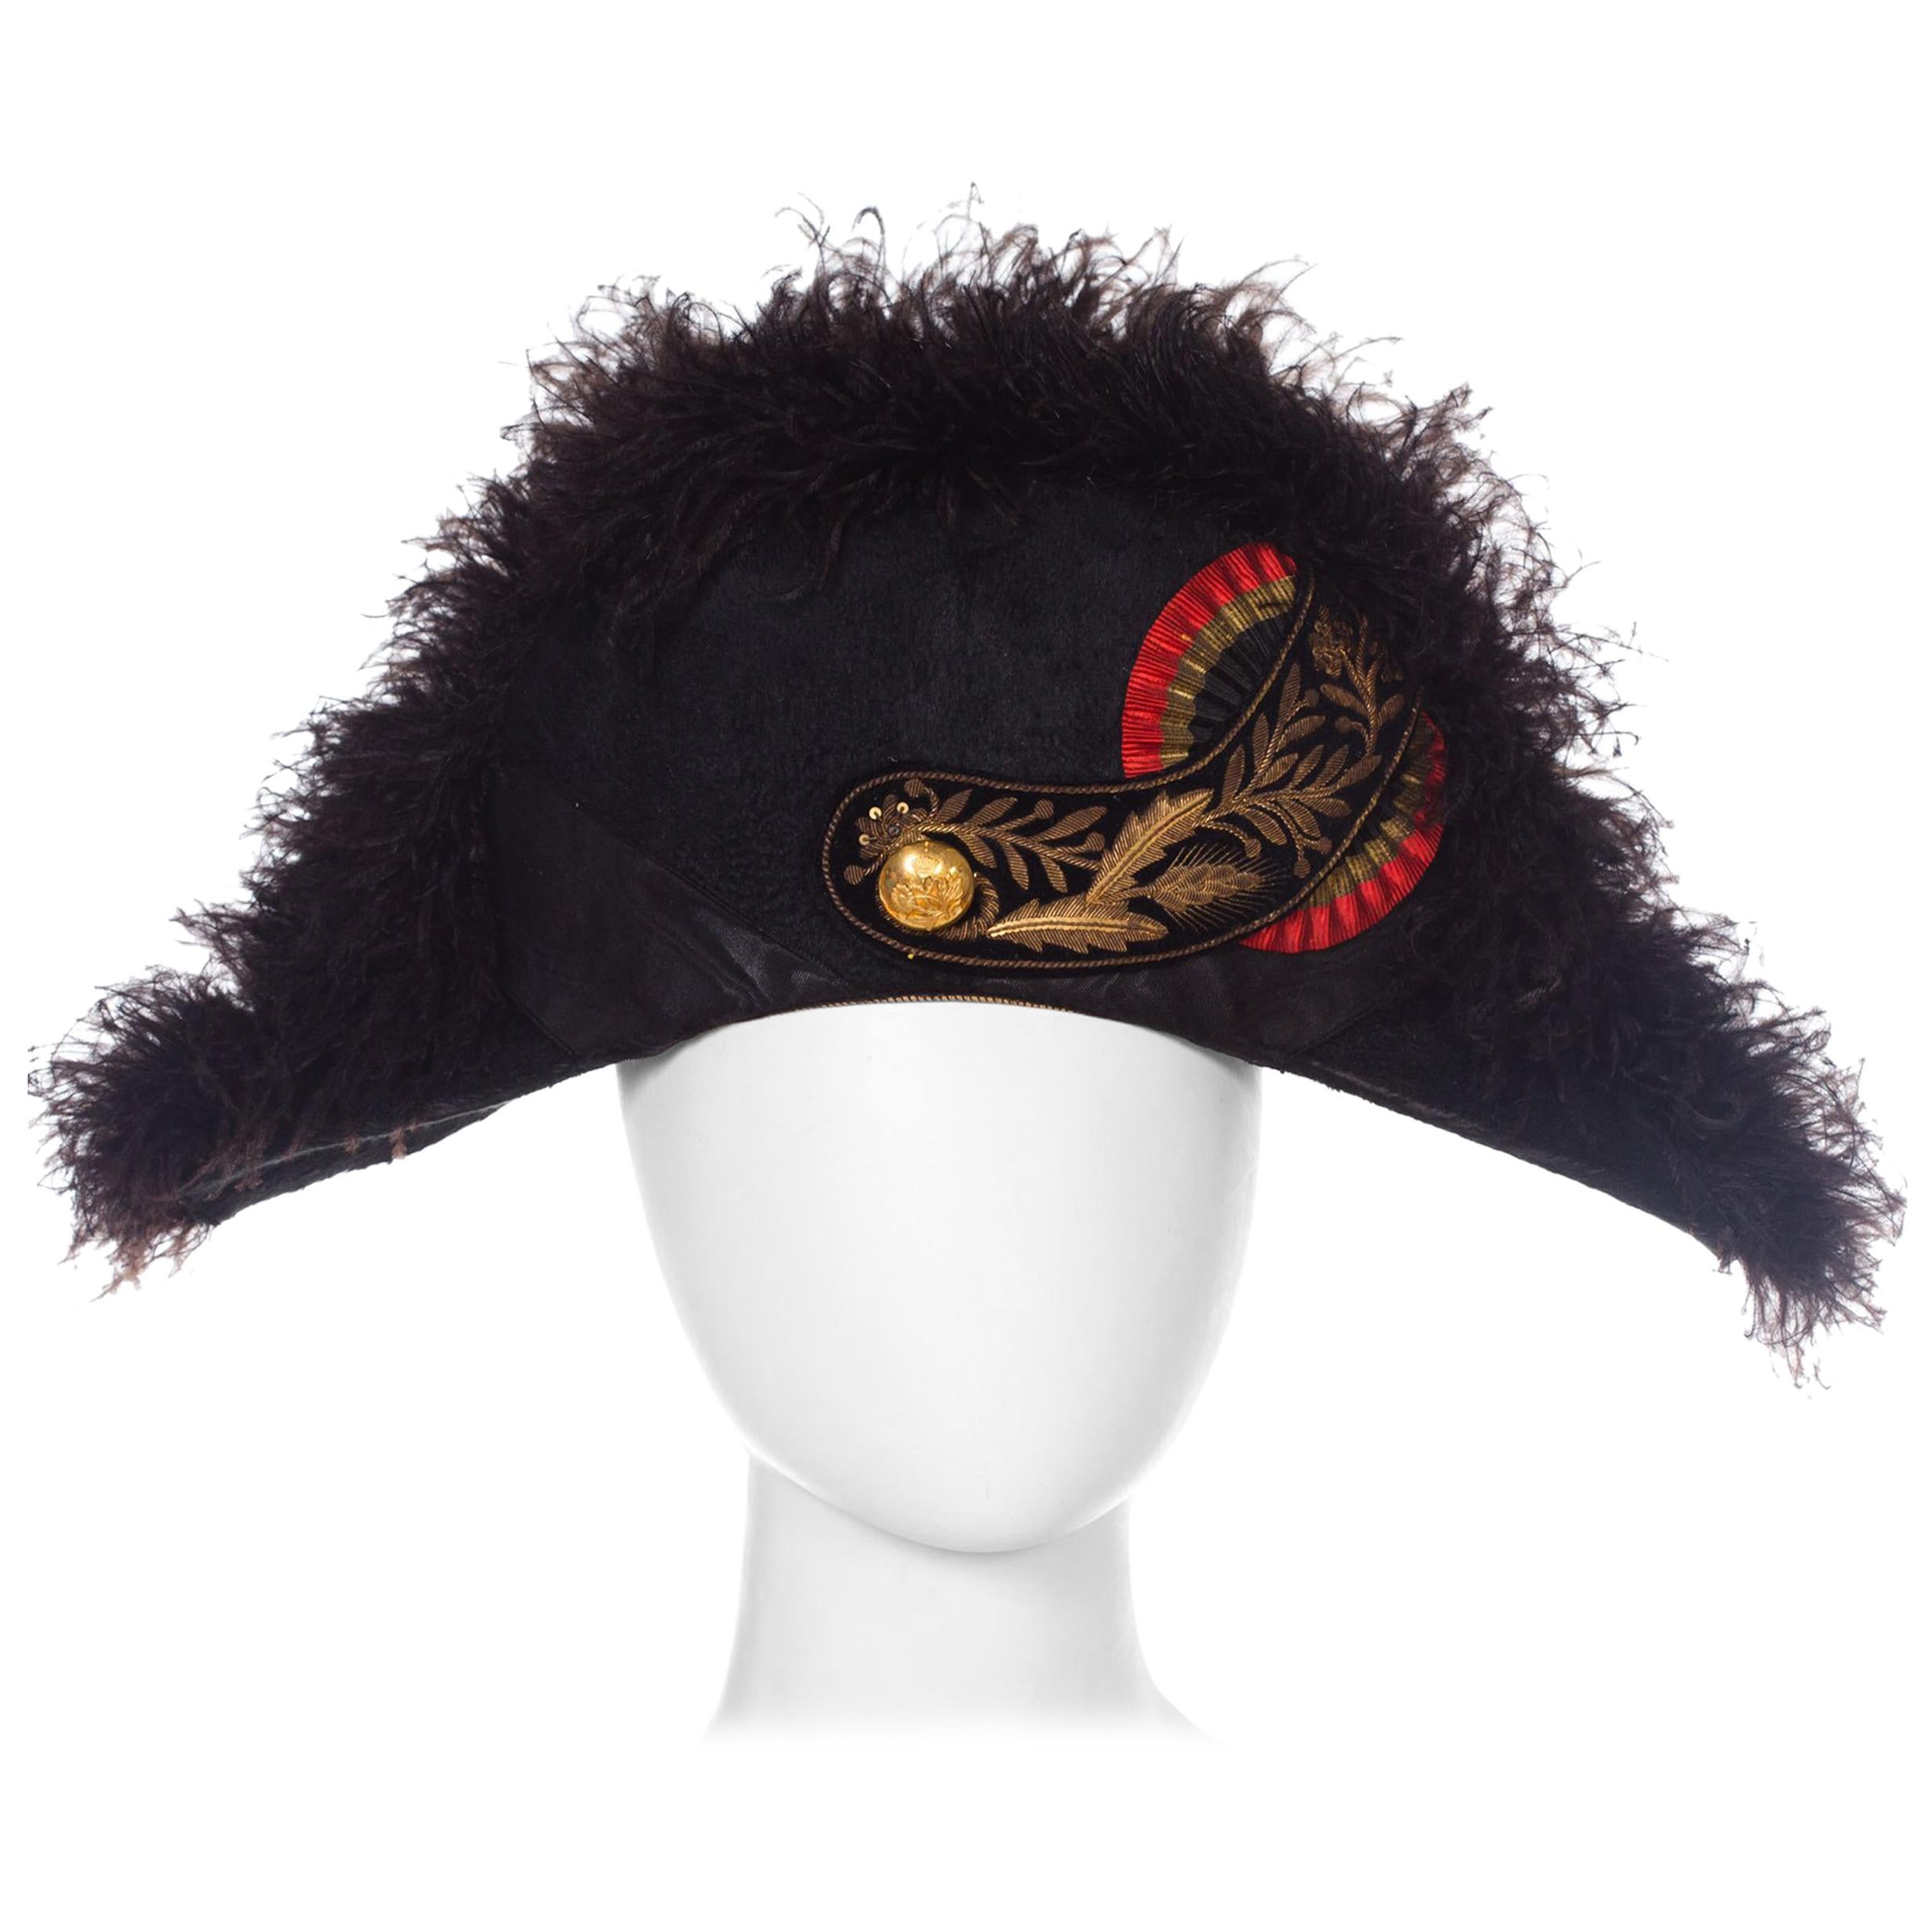 Regal Antique European Formal Military Bicorn Hat